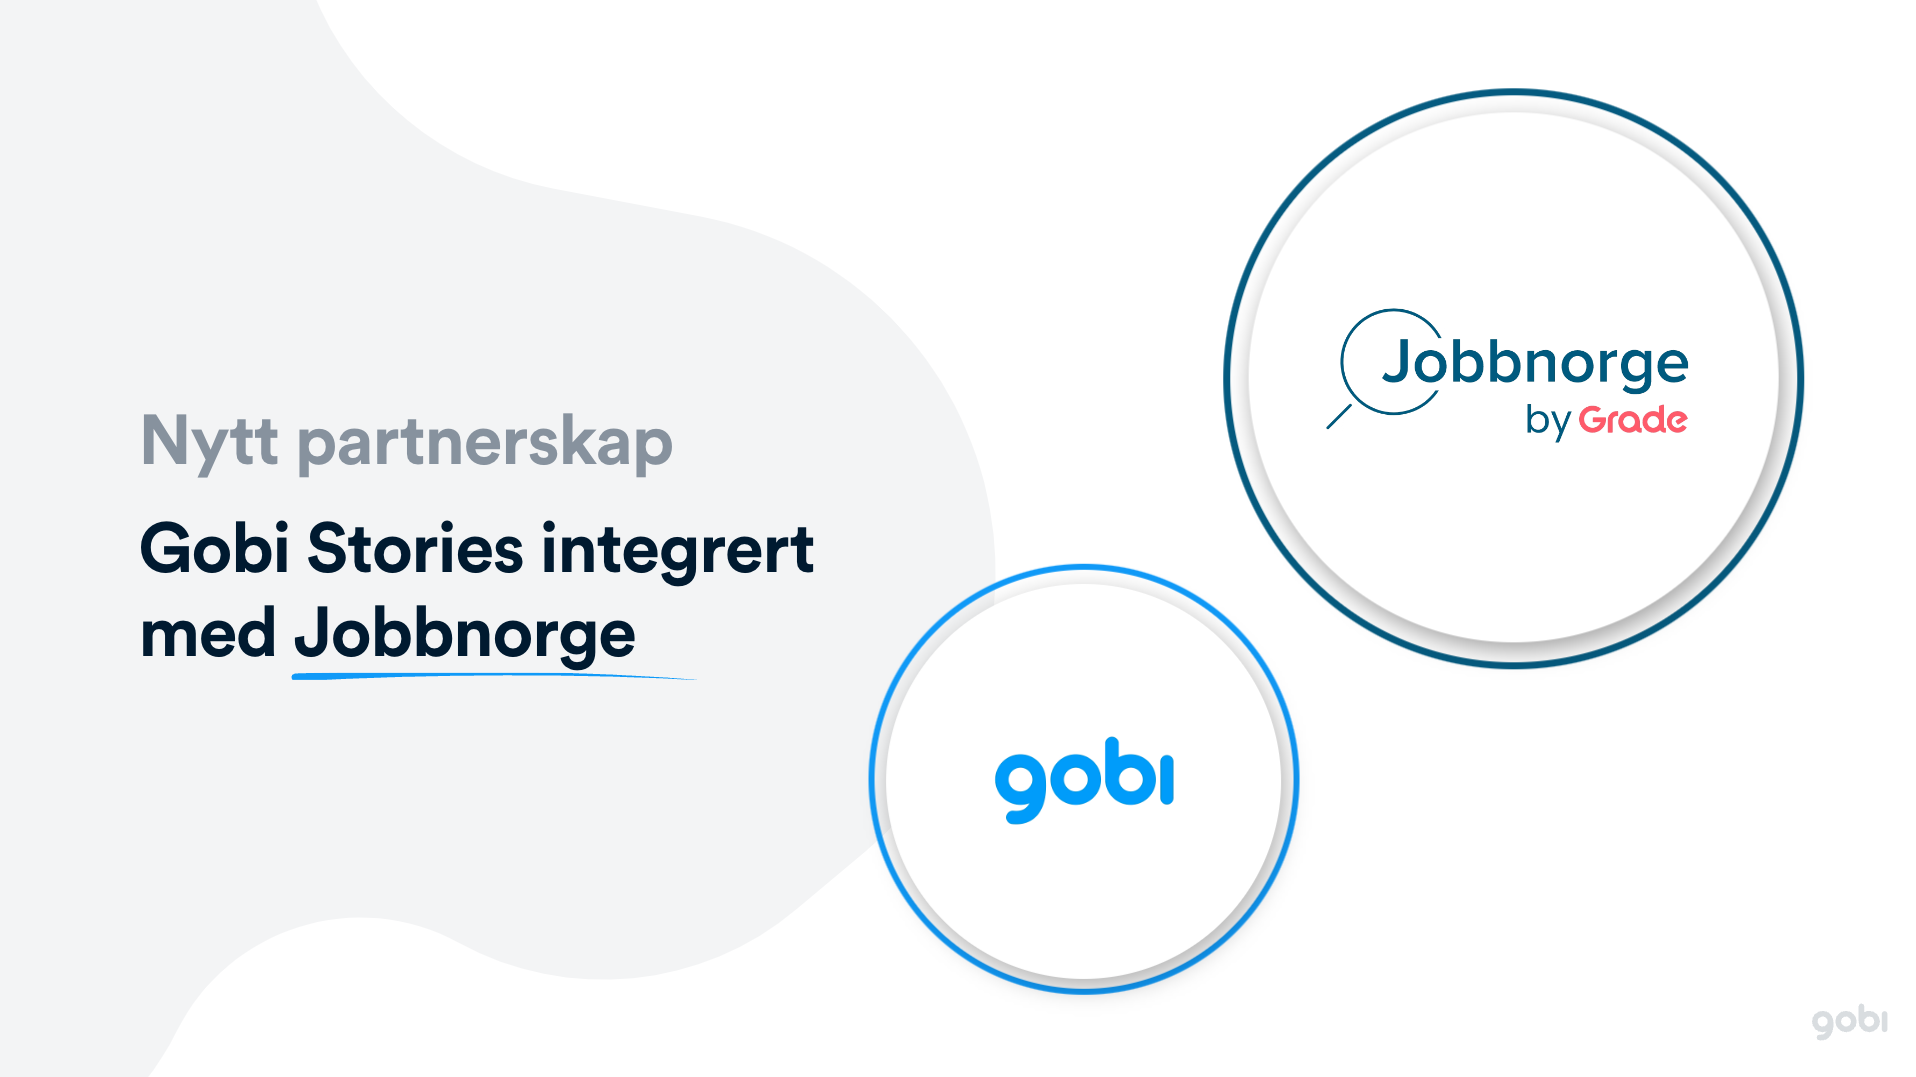 GOBI + Jobbnorge